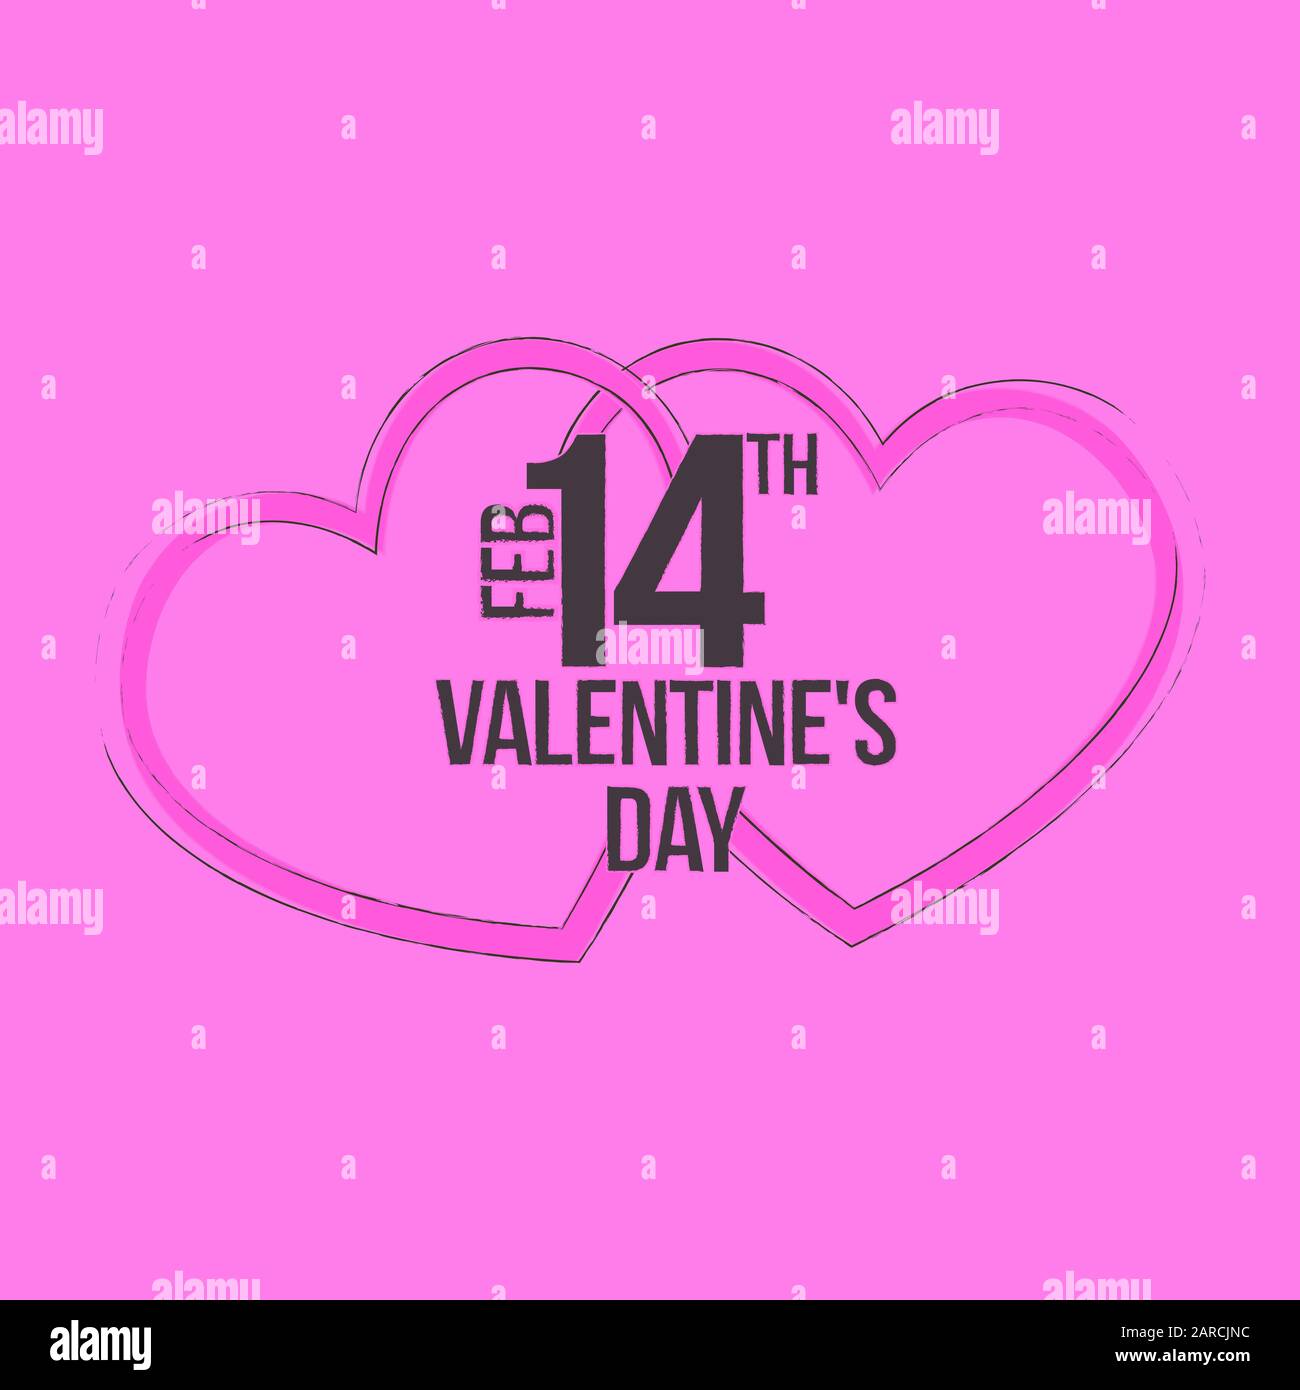 Saint Valentin fond de jour avec le motif de coeur et typographie de heureux valentines texte de jour Illustration de Vecteur